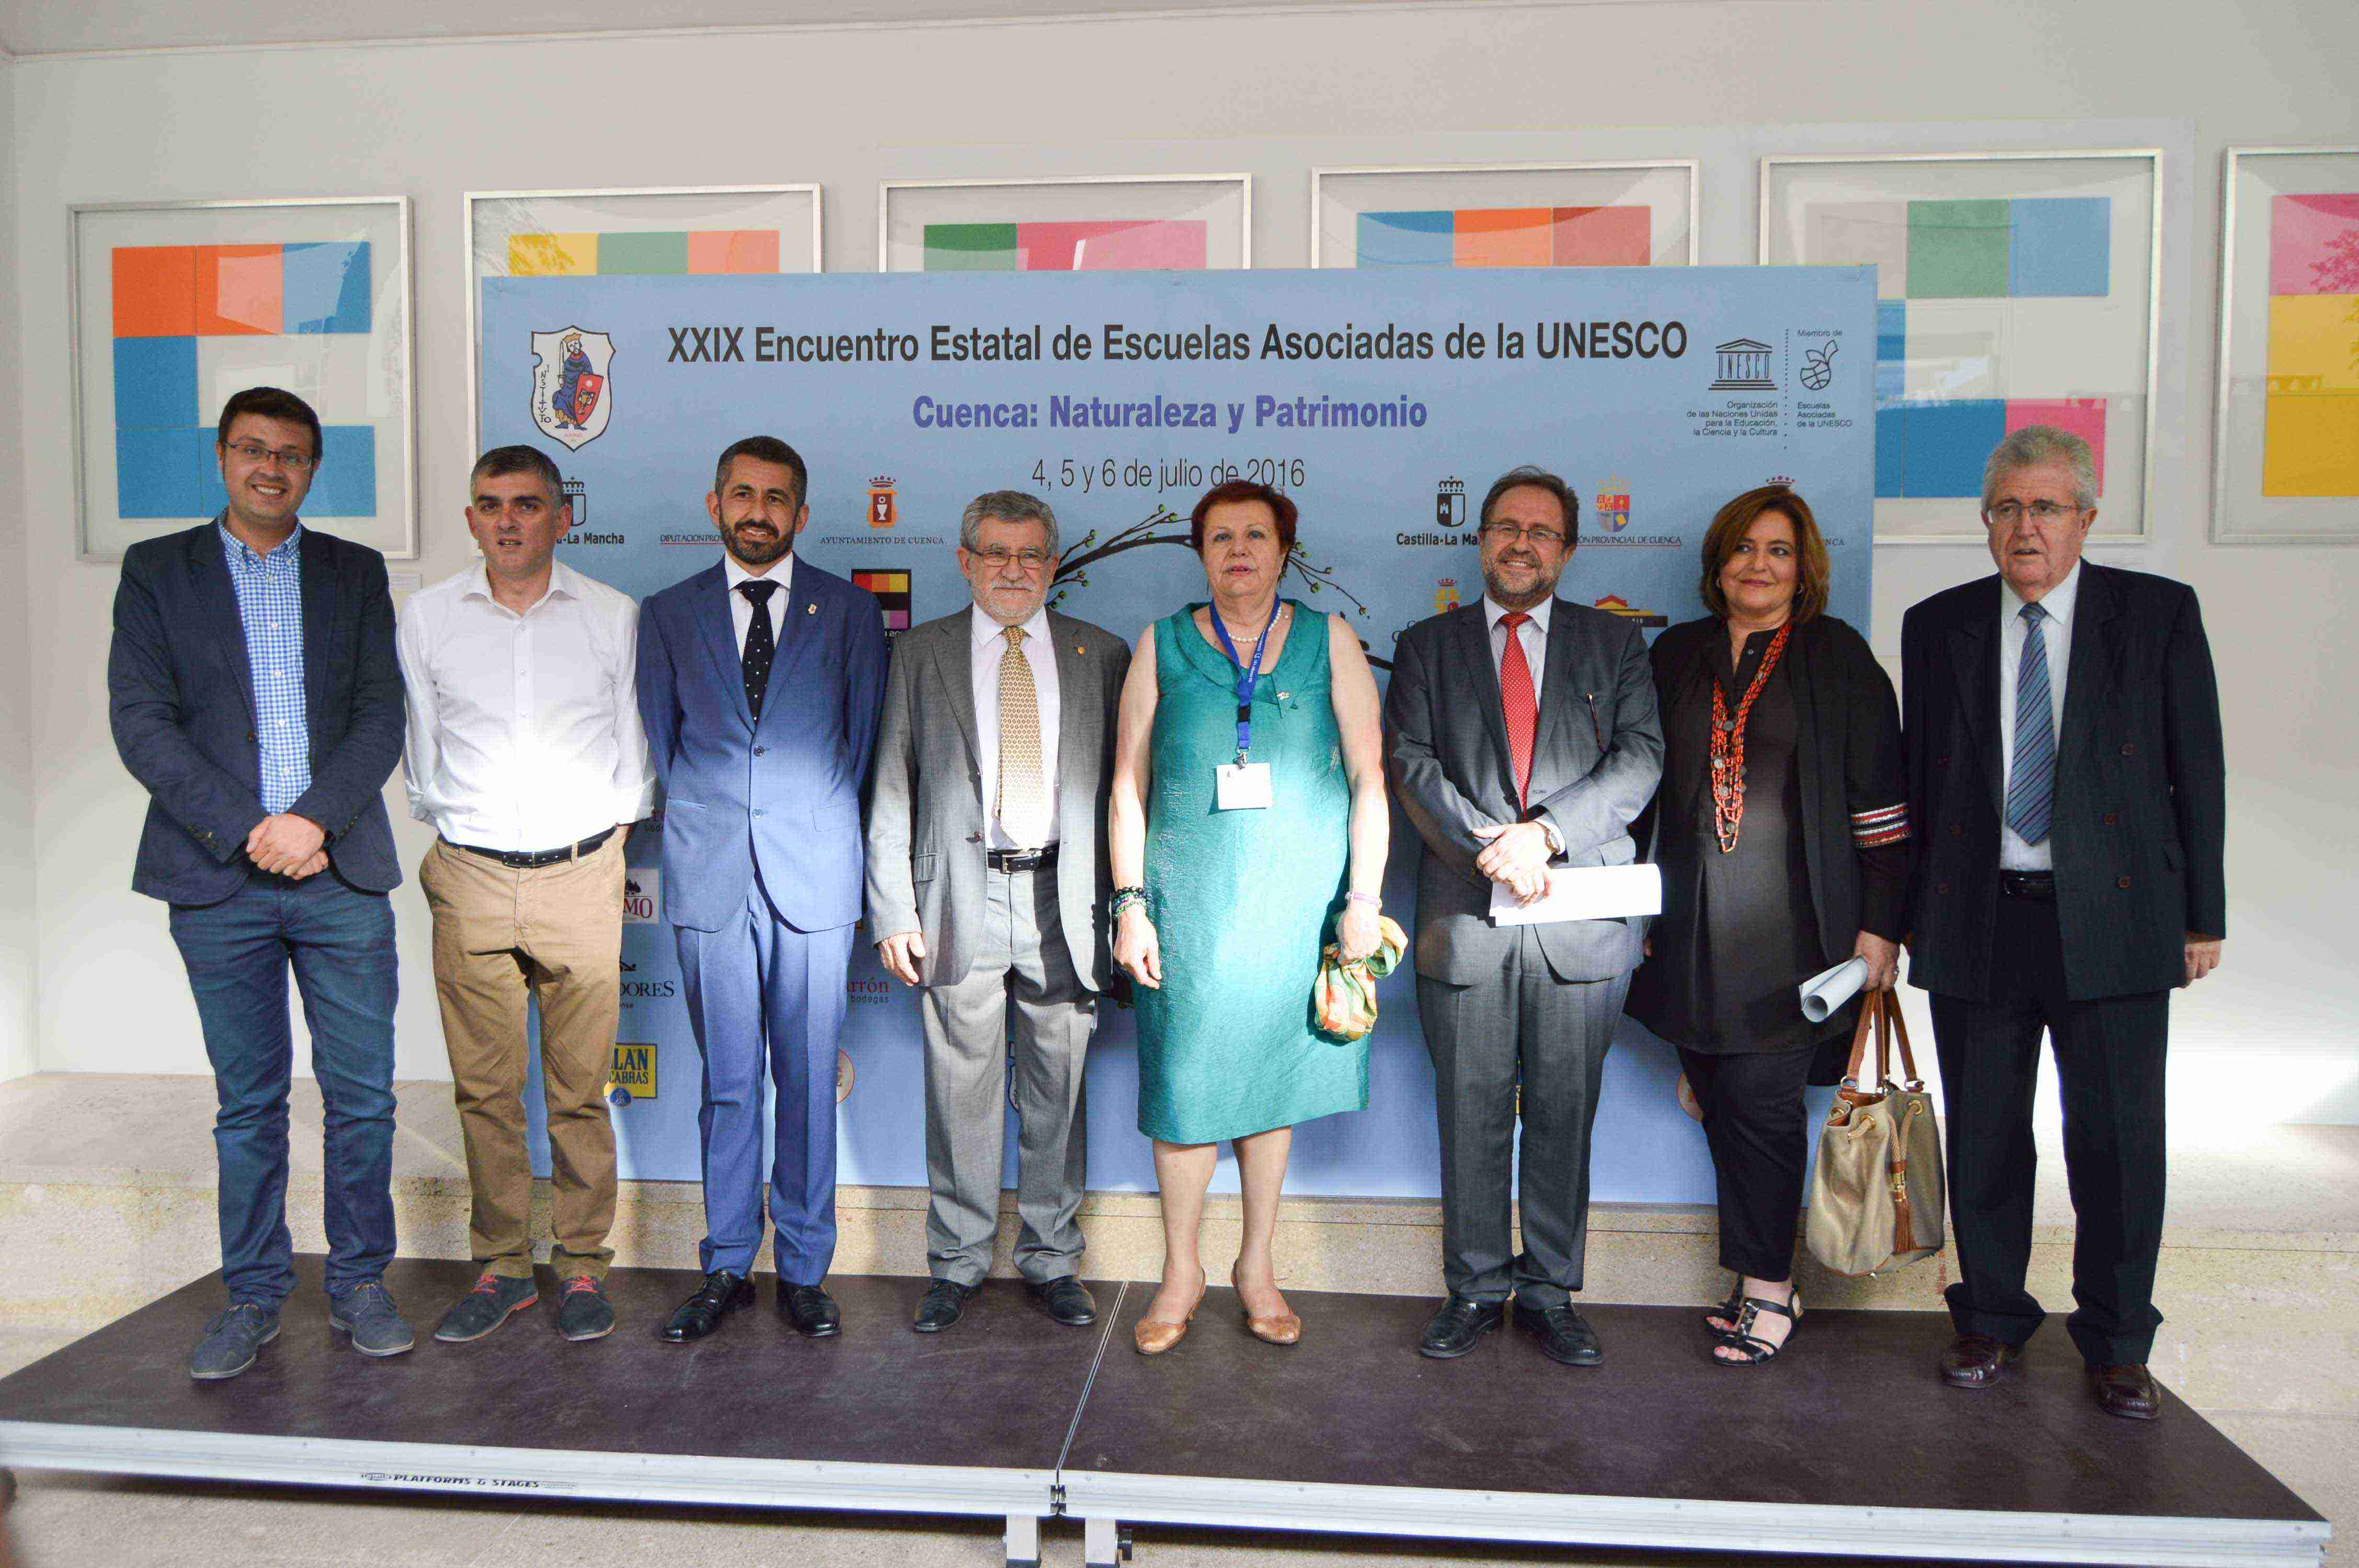 Inauguración del XXIX Encuentro Estatal de Escuelas Asociadas de la UNESCO en Cuenca